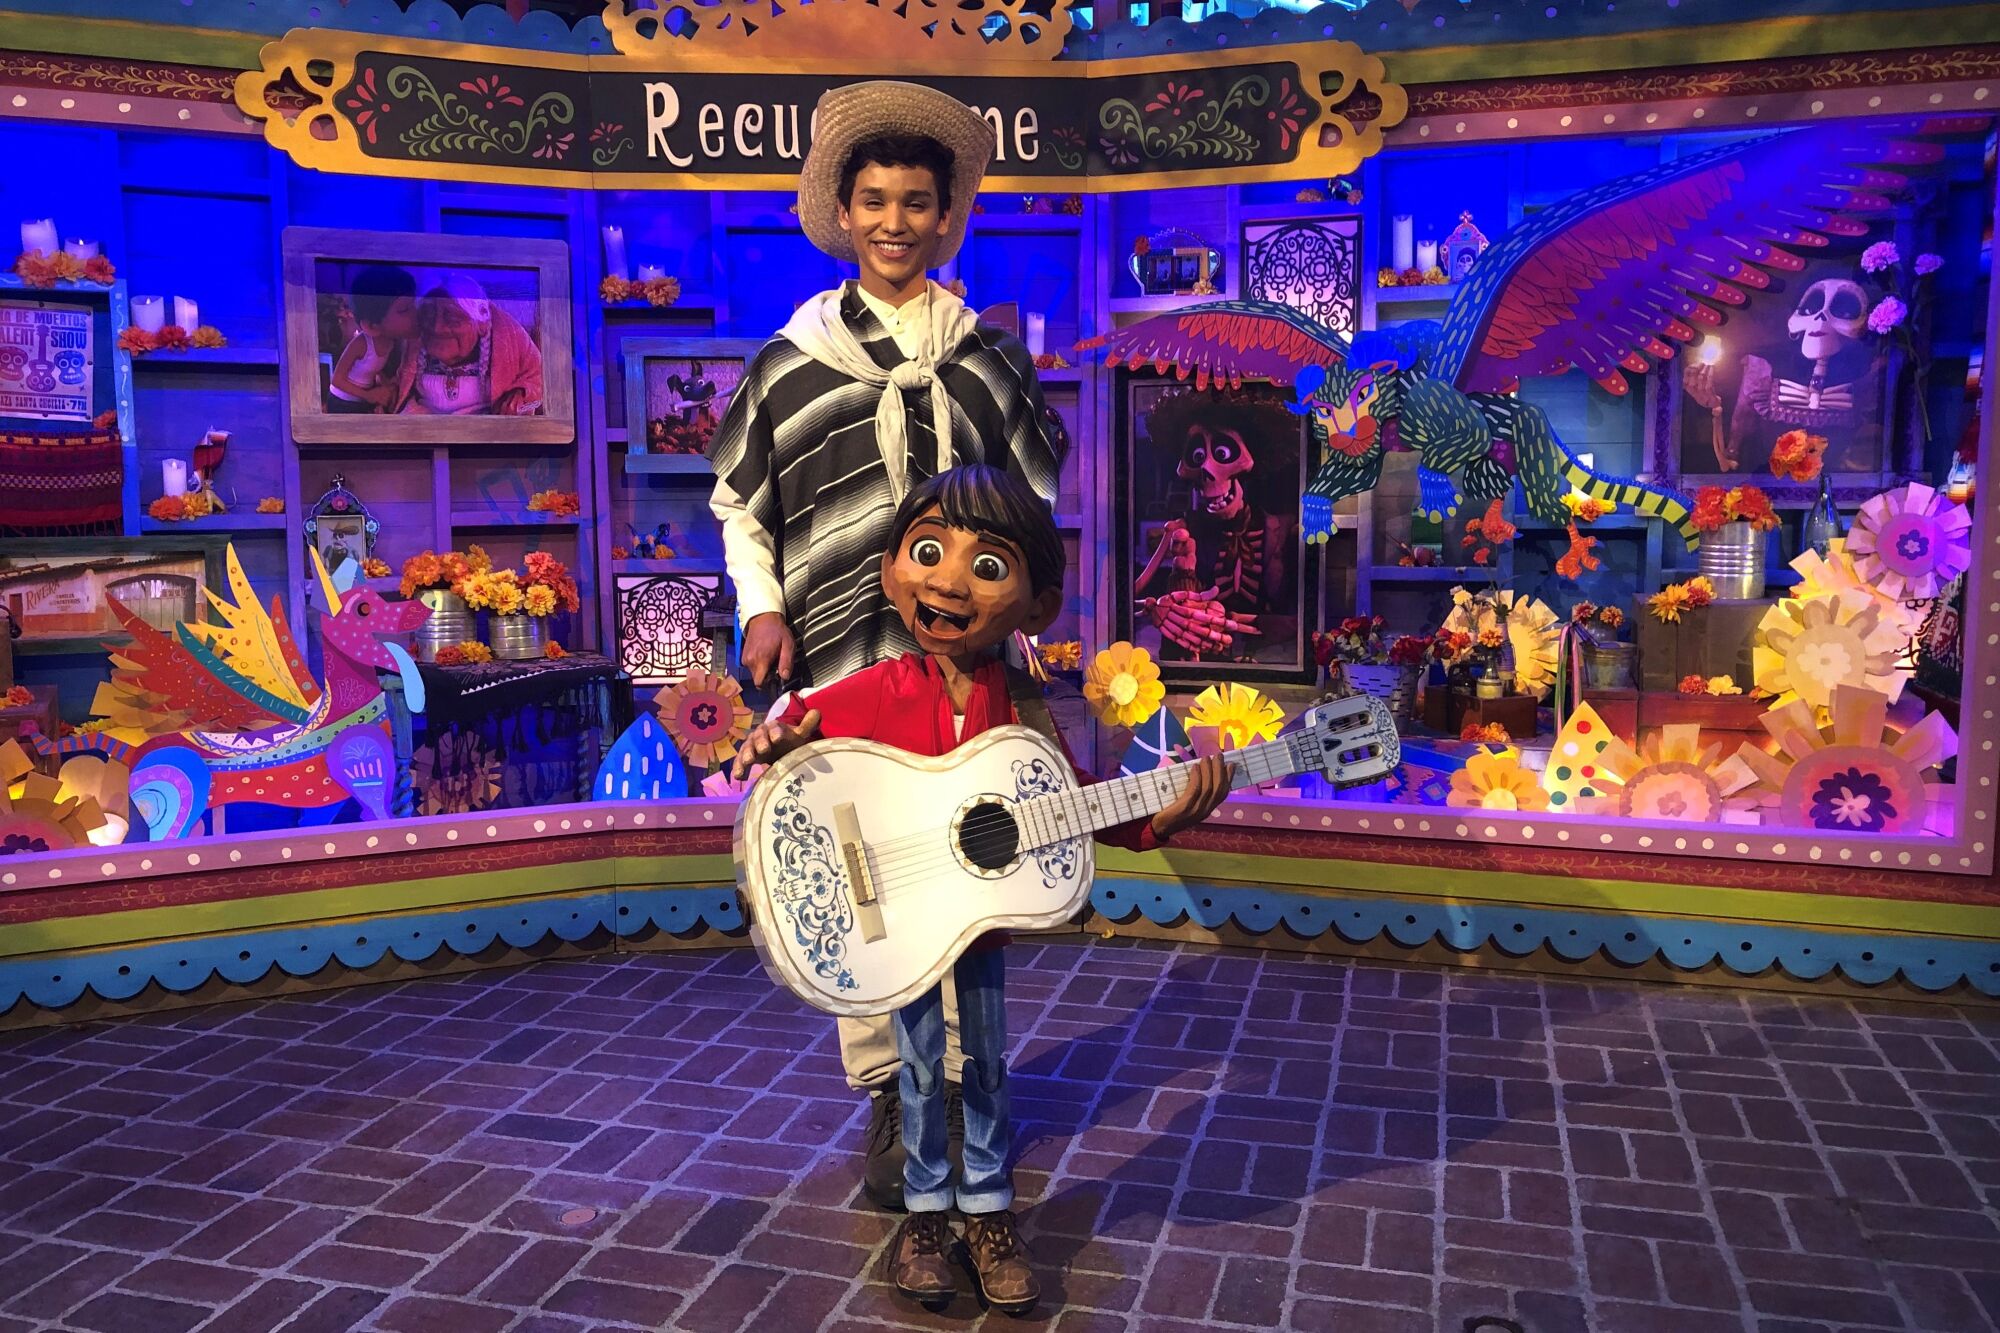 Chip famoso solitario El colorido latino toma protagonismo en las celebraciones de esta temporada  en los parques Disney - Los Angeles Times